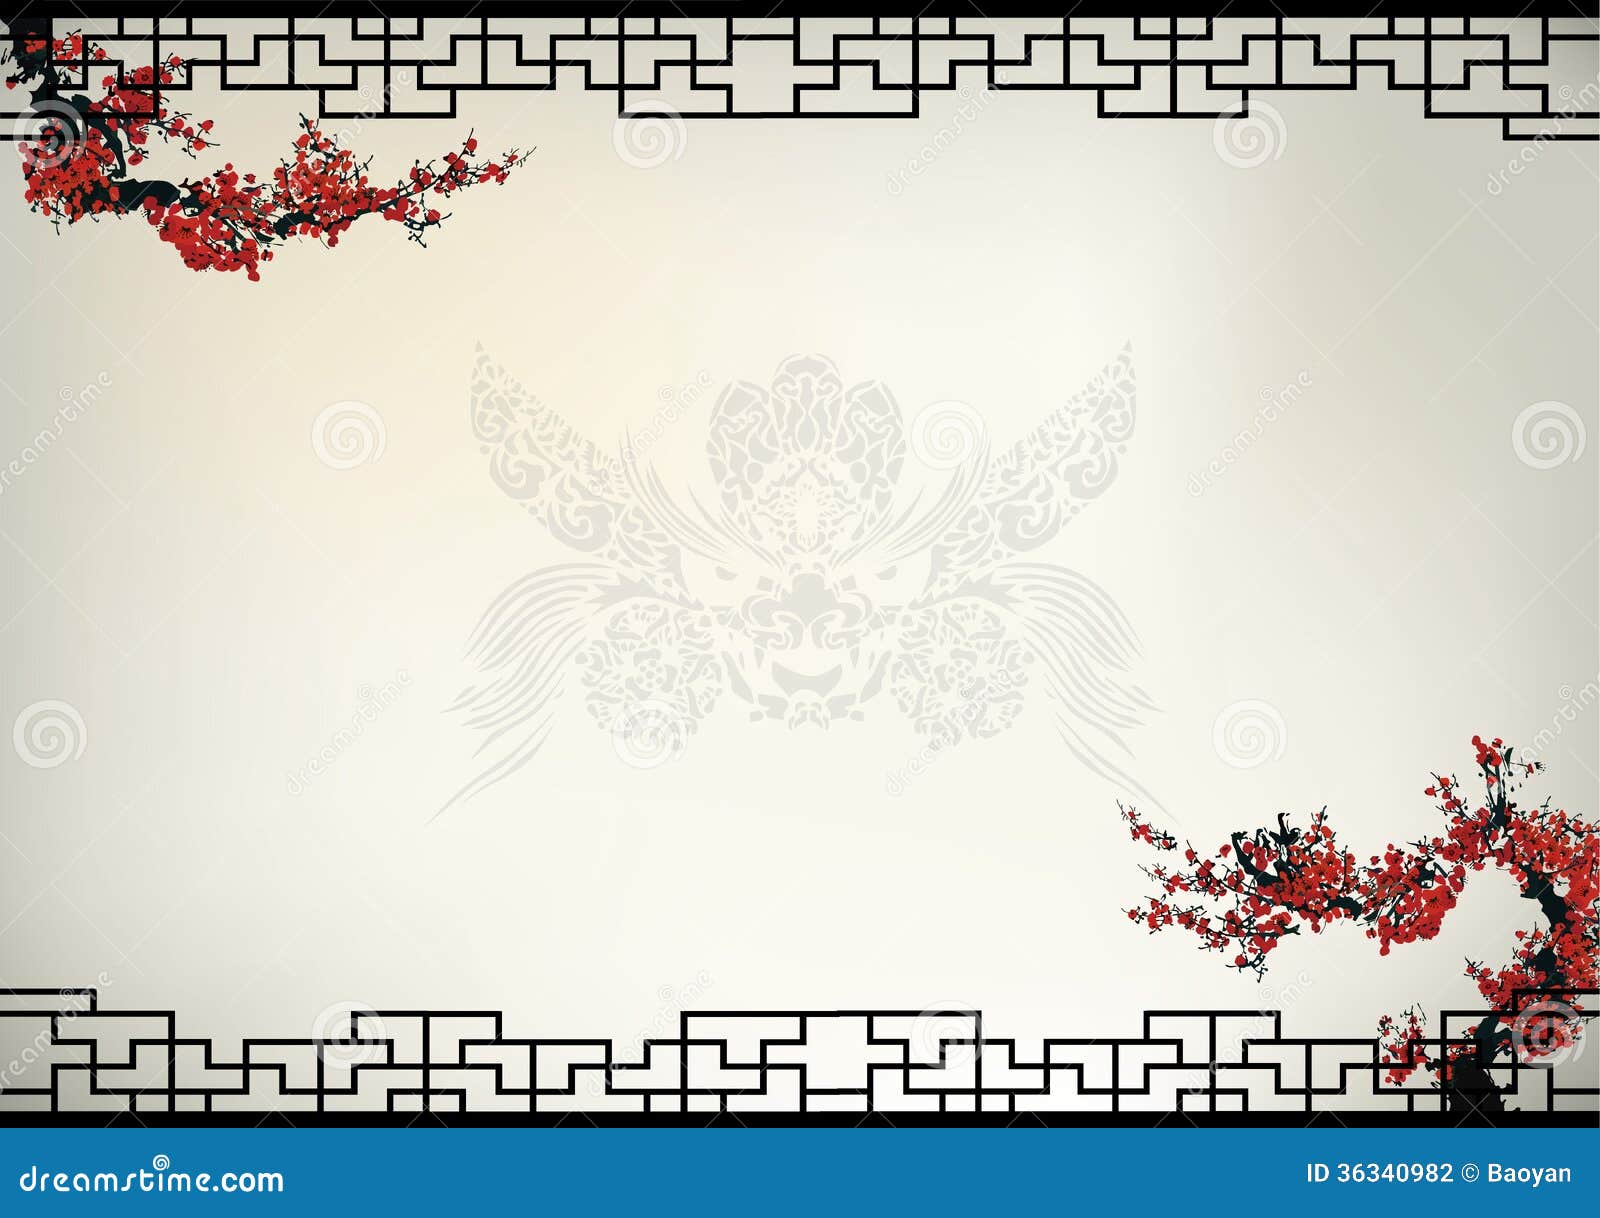 中国背景向量例证 插画包括有春天 花卉 双翼飞机 本质 水彩 东方 背包 开花 结构树